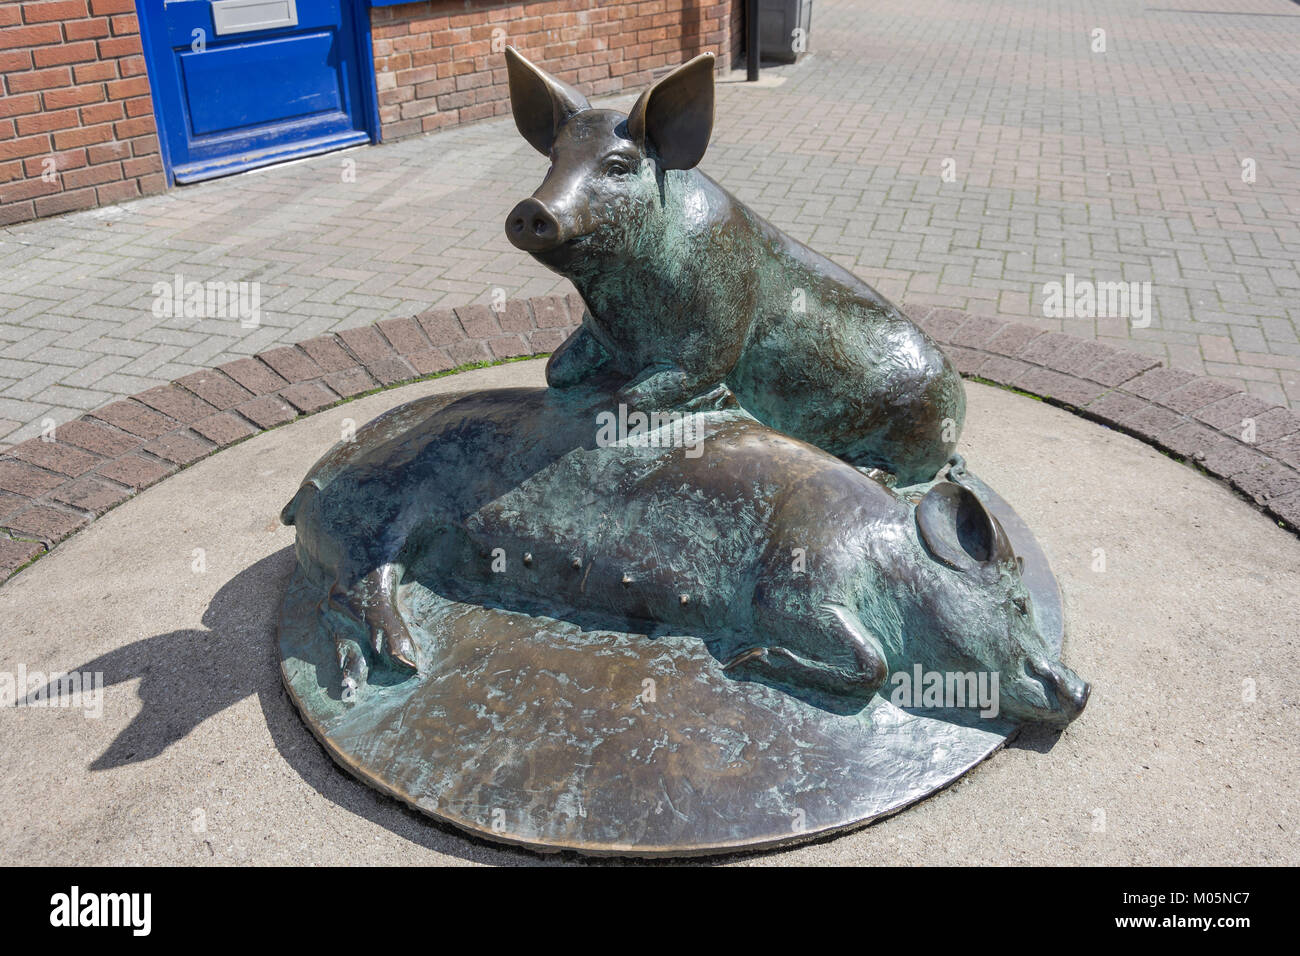 Cochon bronze sculpture à Calne Wiltshire célèbre jambon à l'industrie de la ville, défilé de Phelps, Calne, Wiltshire, Angleterre, Royaume-Uni Banque D'Images